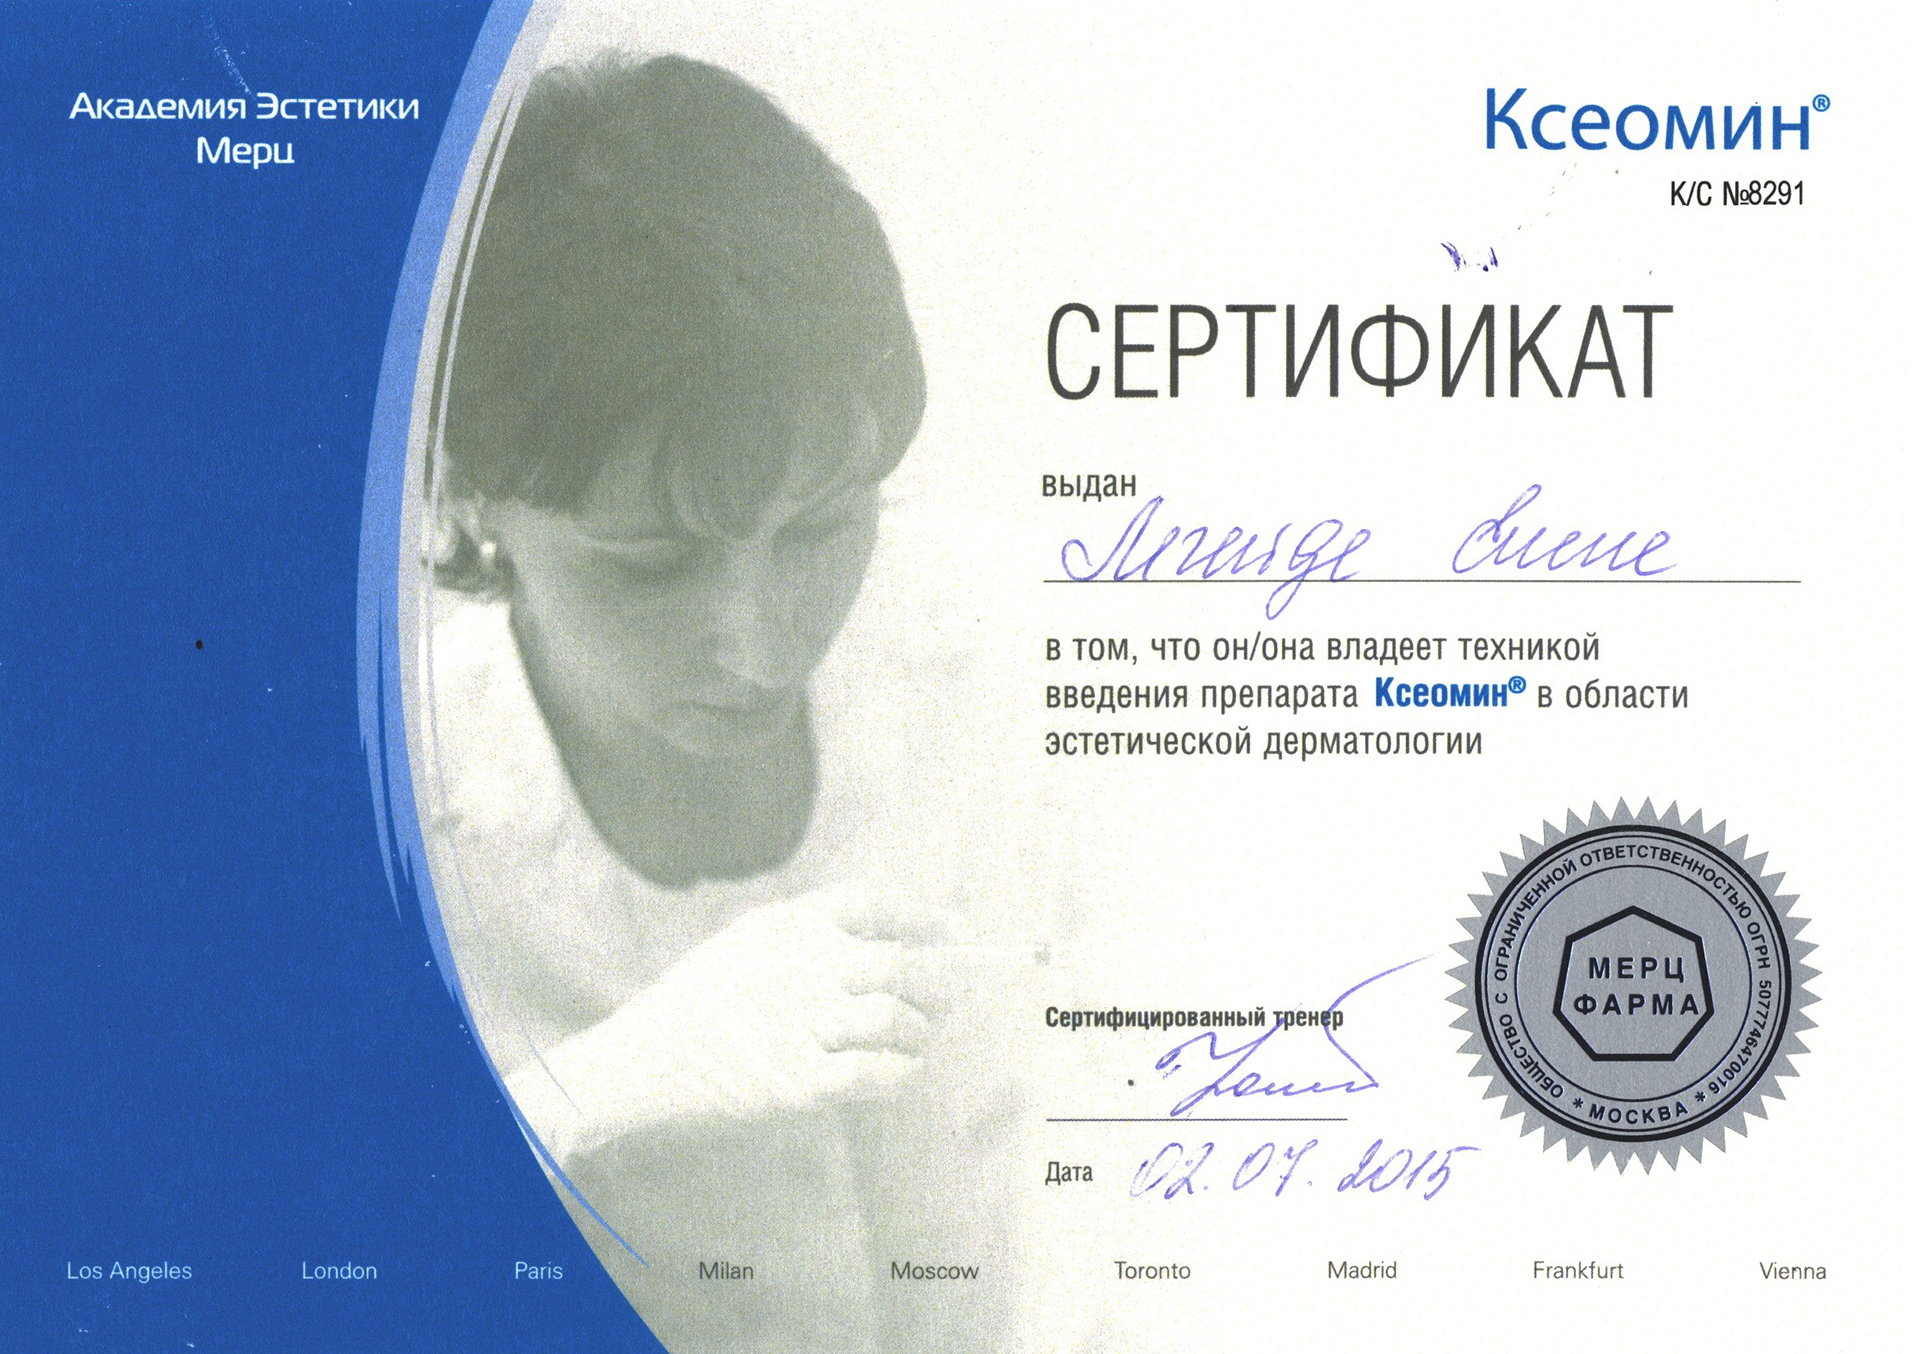 Сертификат — Техника введения препарата Ксеомин. Легейда Елена Валерьевна